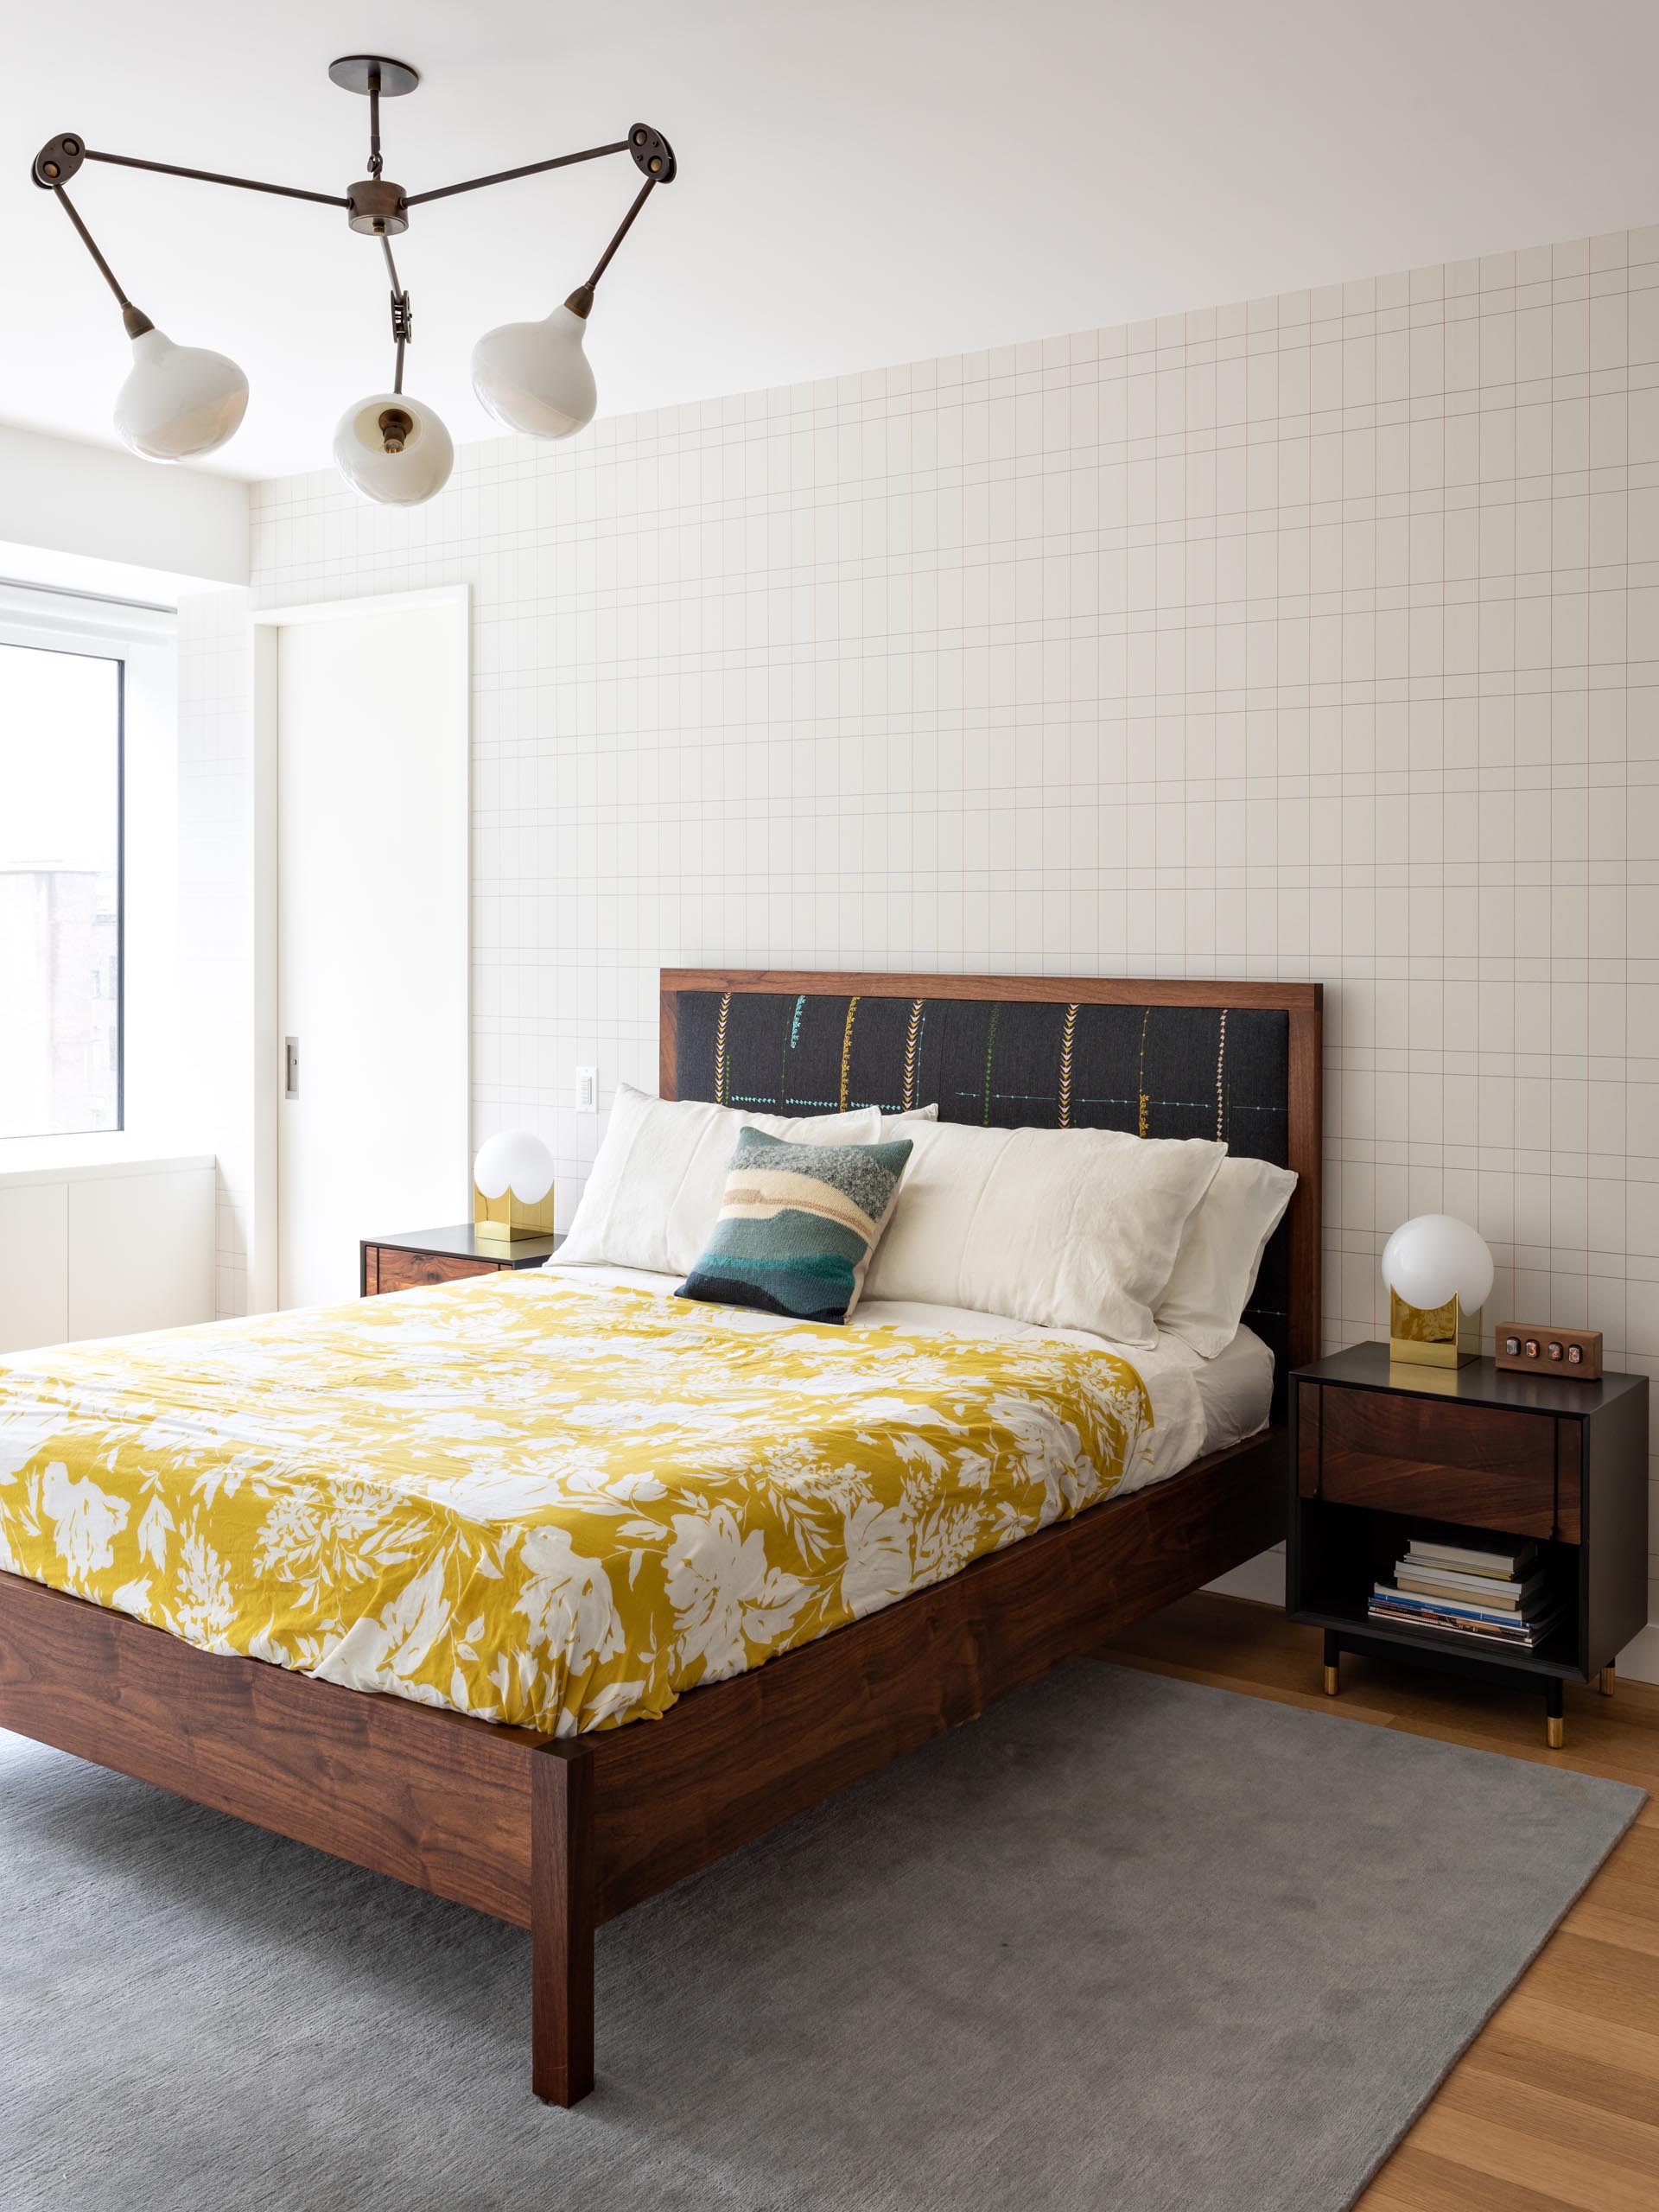 Современная главная спальня с деревянной мебелью, яркими элементами декора и стеной с графическим акцентом.